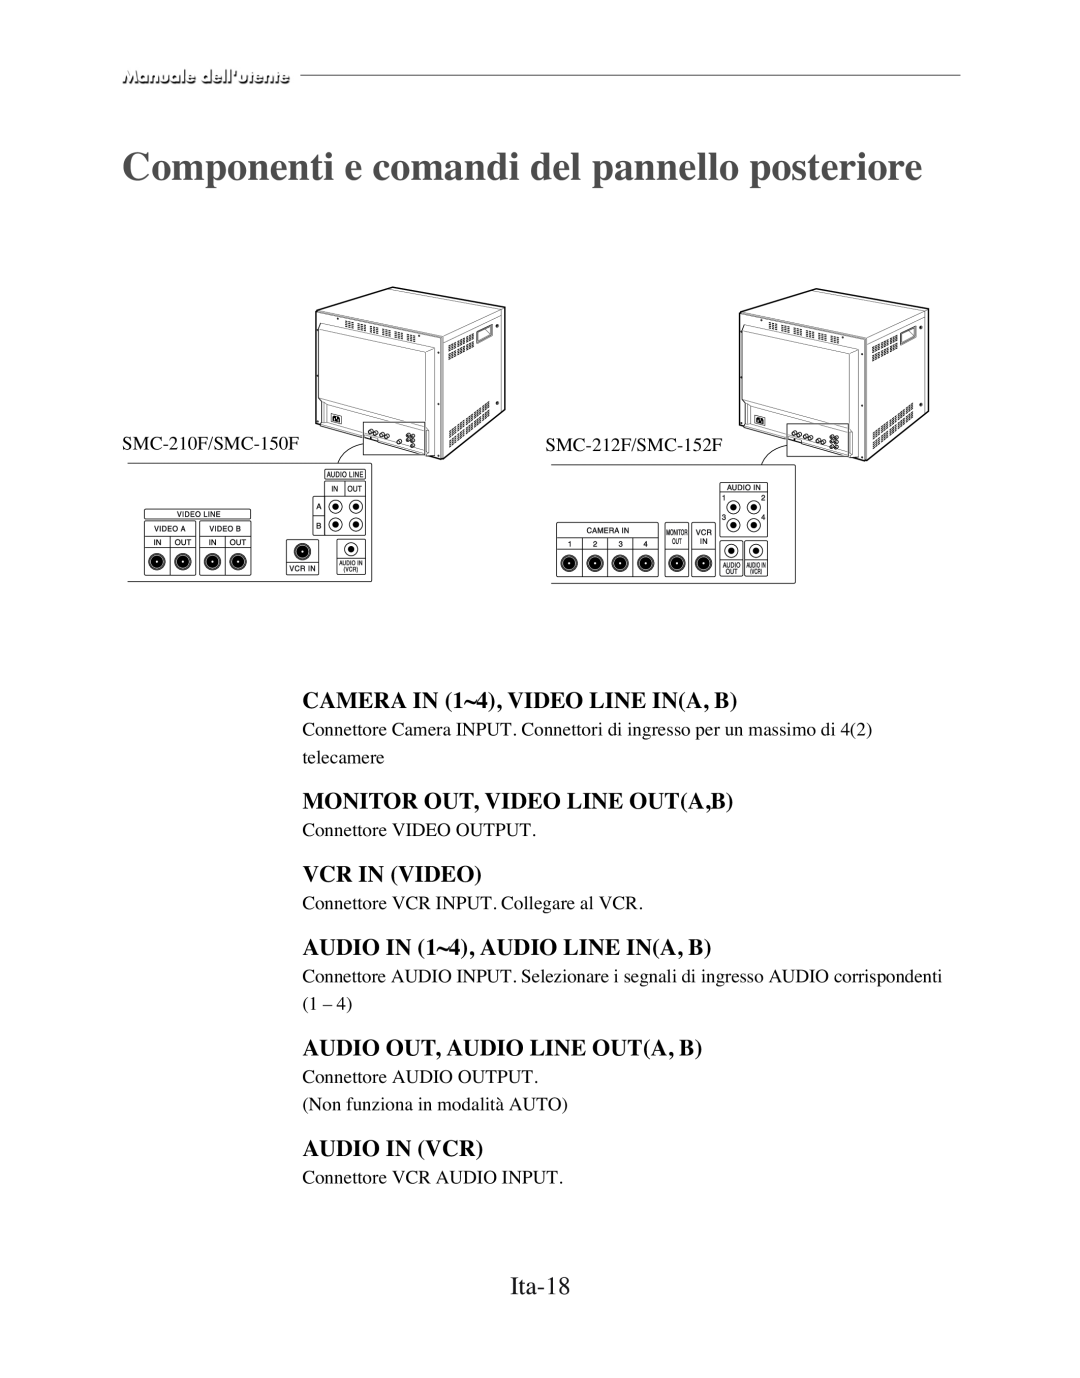 Samsung SMC-152FP Componenti e comandi del pannello posteriore, Ita-18, CAMERA IN 1~4, VIDEO LINE INA, B, Vcr In Video 